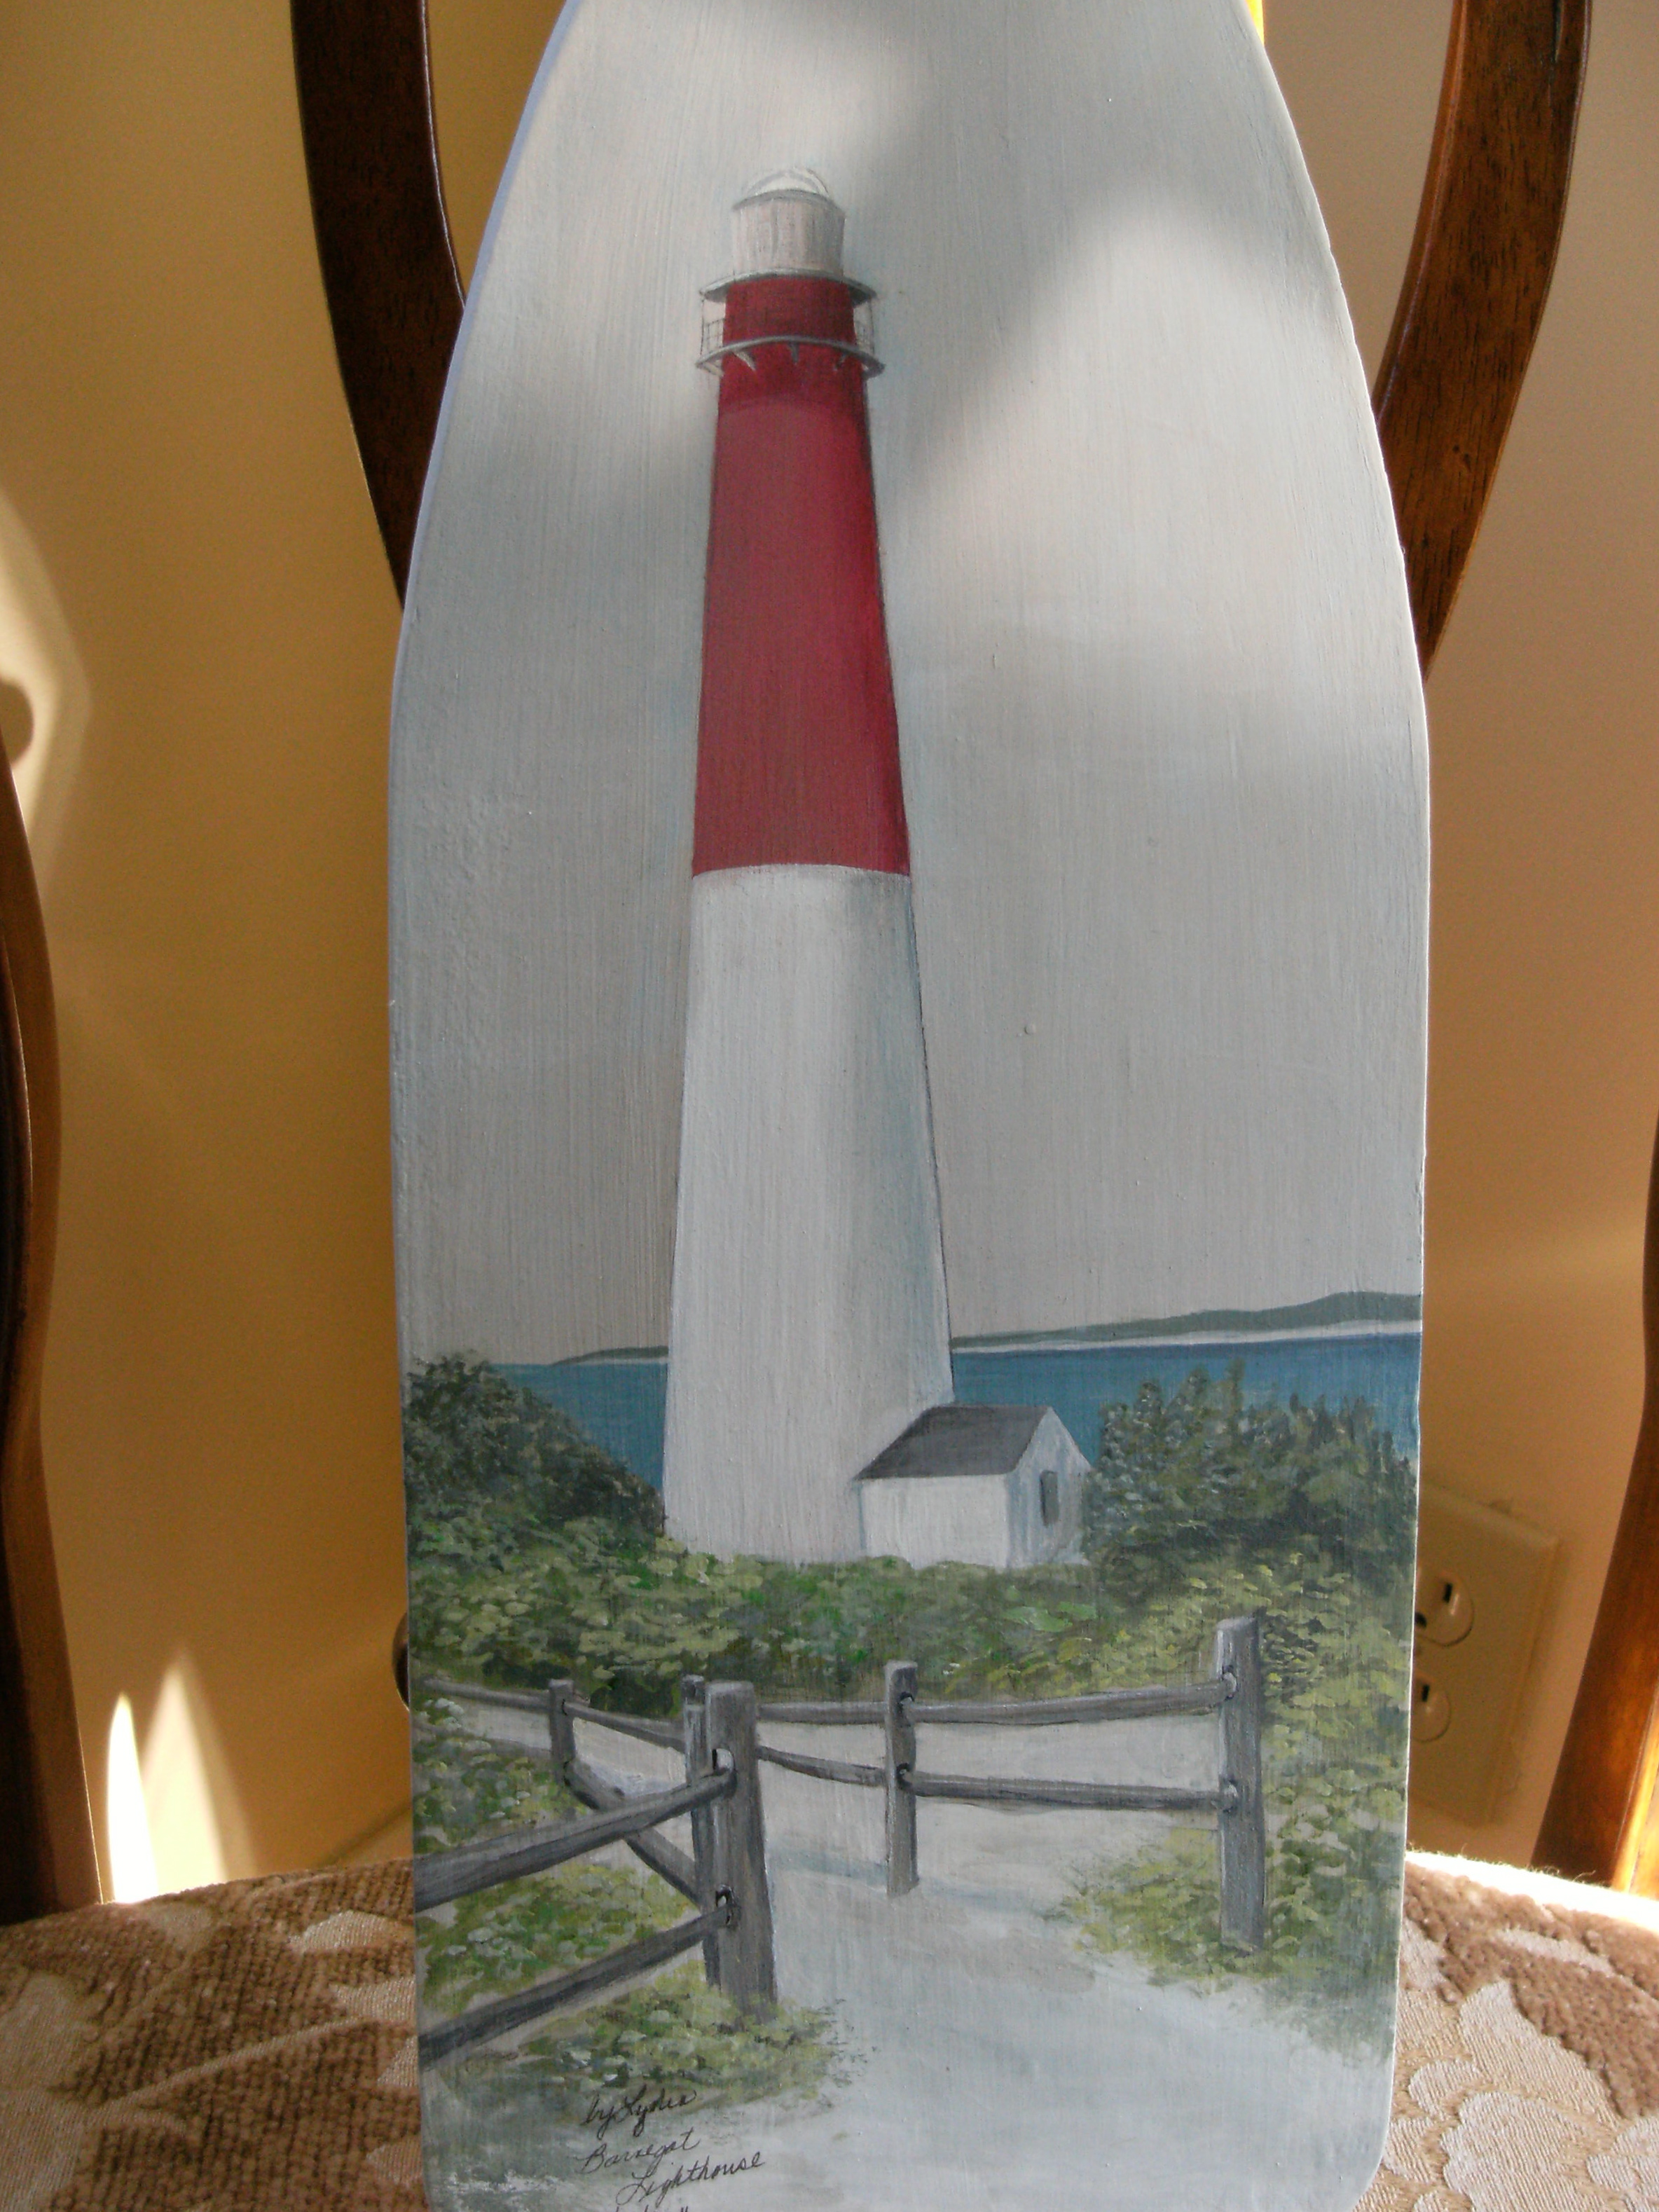 The Barnegat Lighthouse